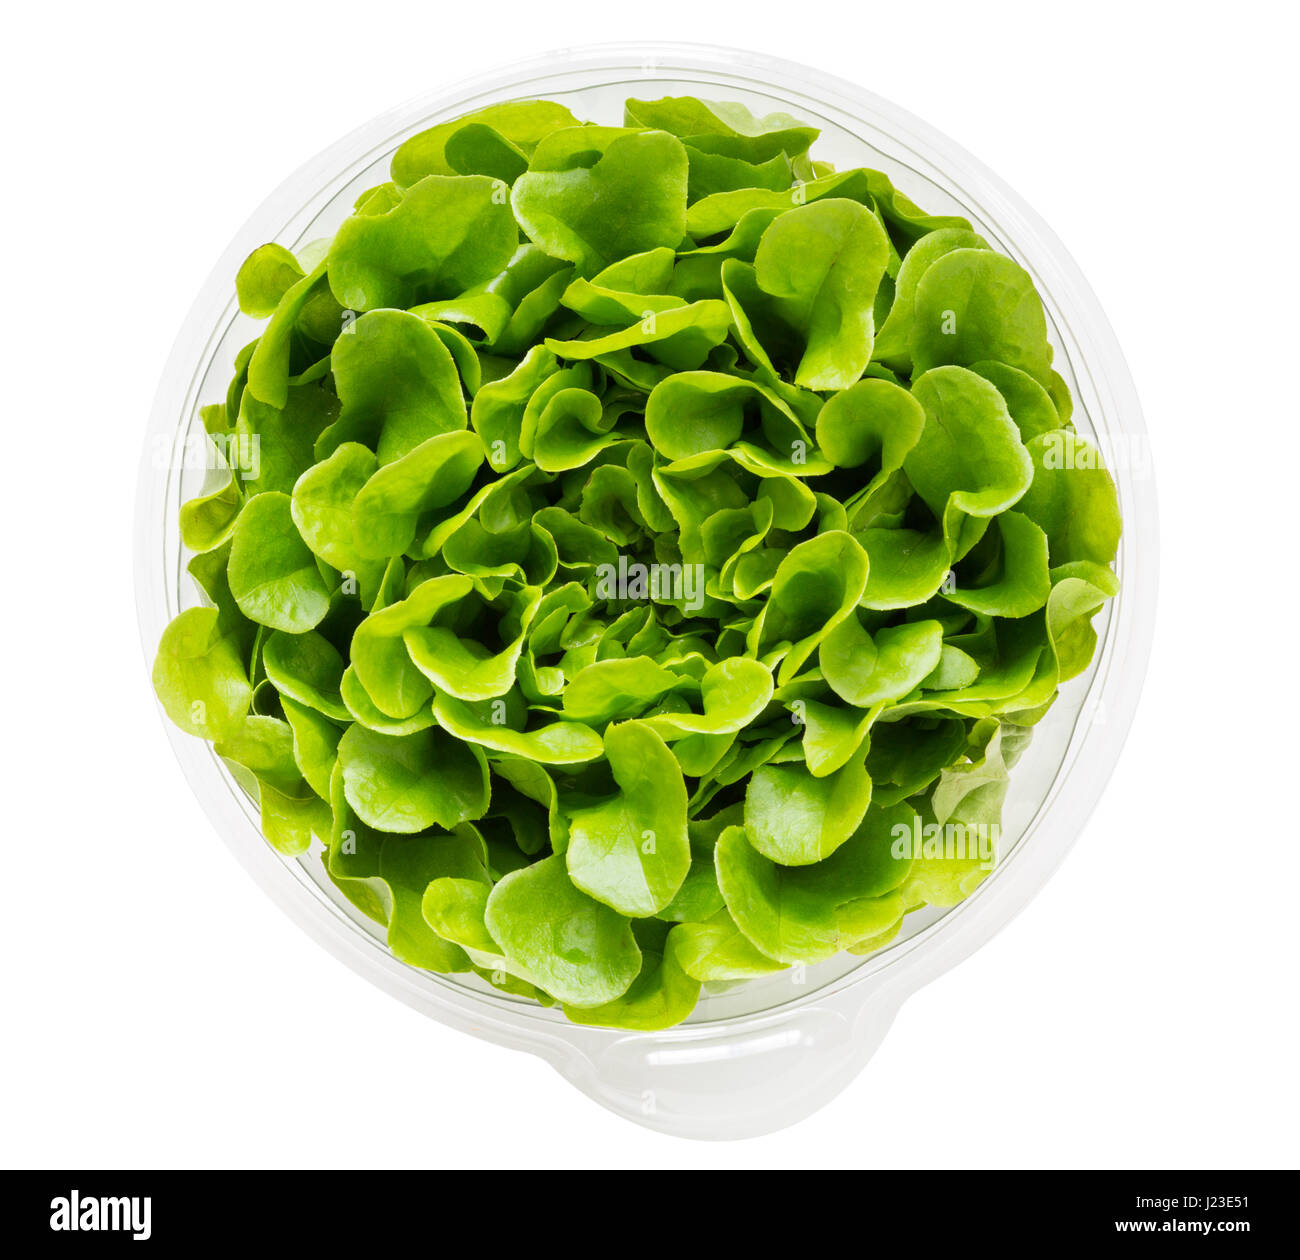 Salanova Lechuga creciendo en recipiente de plástico para permitir que las hojas individuales para ser cosechadas Foto de stock